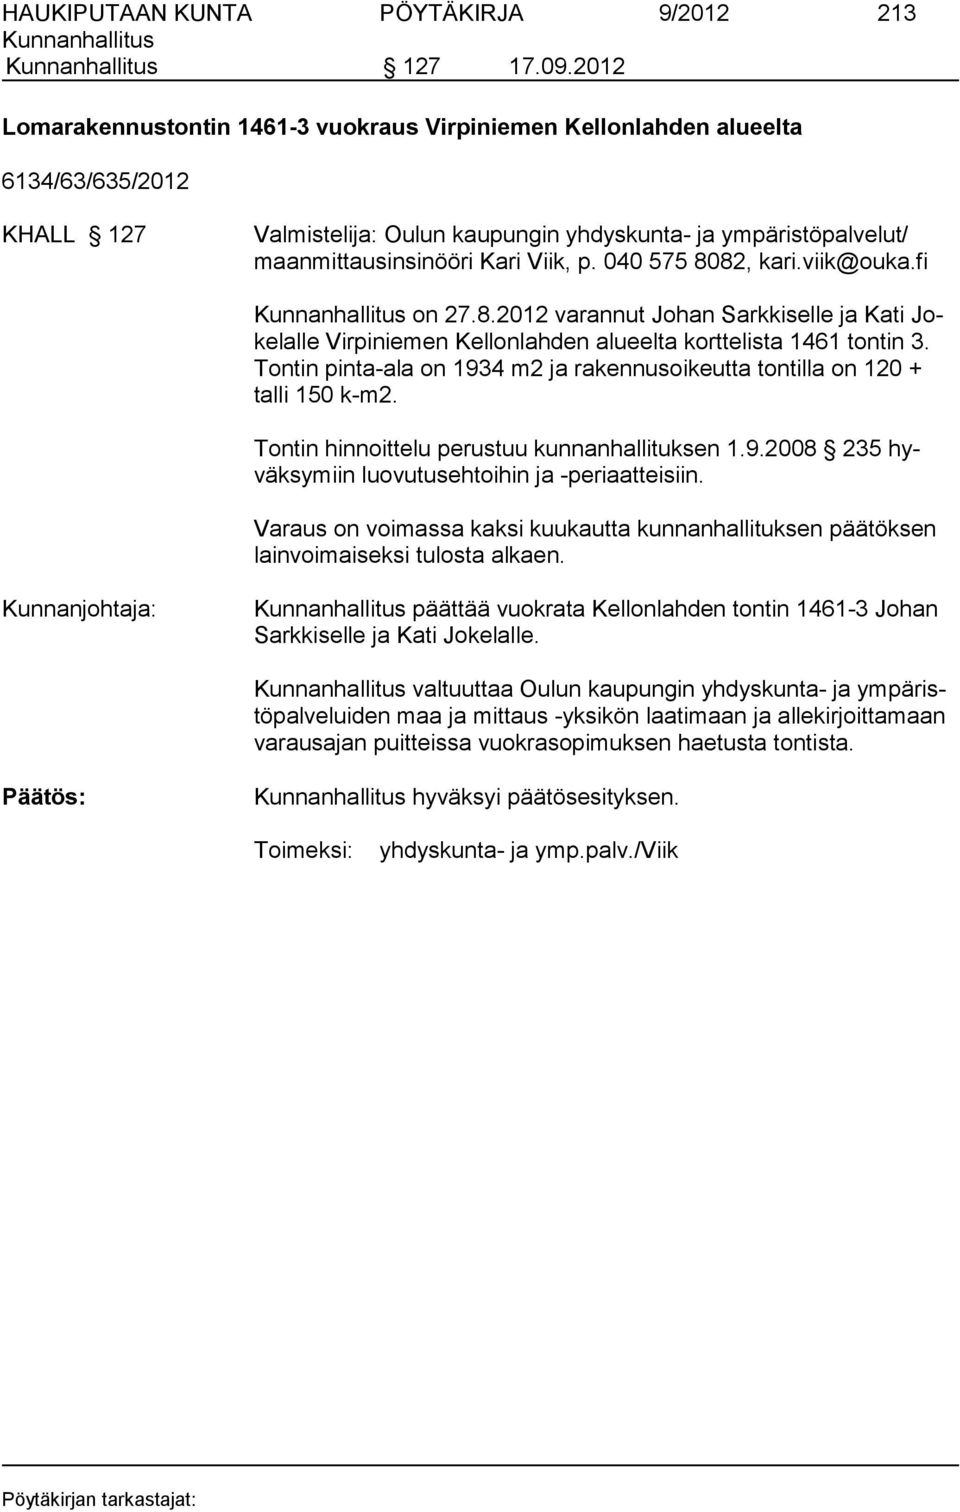 040 575 8082, kari.viik@ouka.fi on 27.8.2012 varannut Johan Sarkkiselle ja Kati Jokelalle Virpiniemen Kel lon lah den alueelta korttelista 1461 tontin 3.